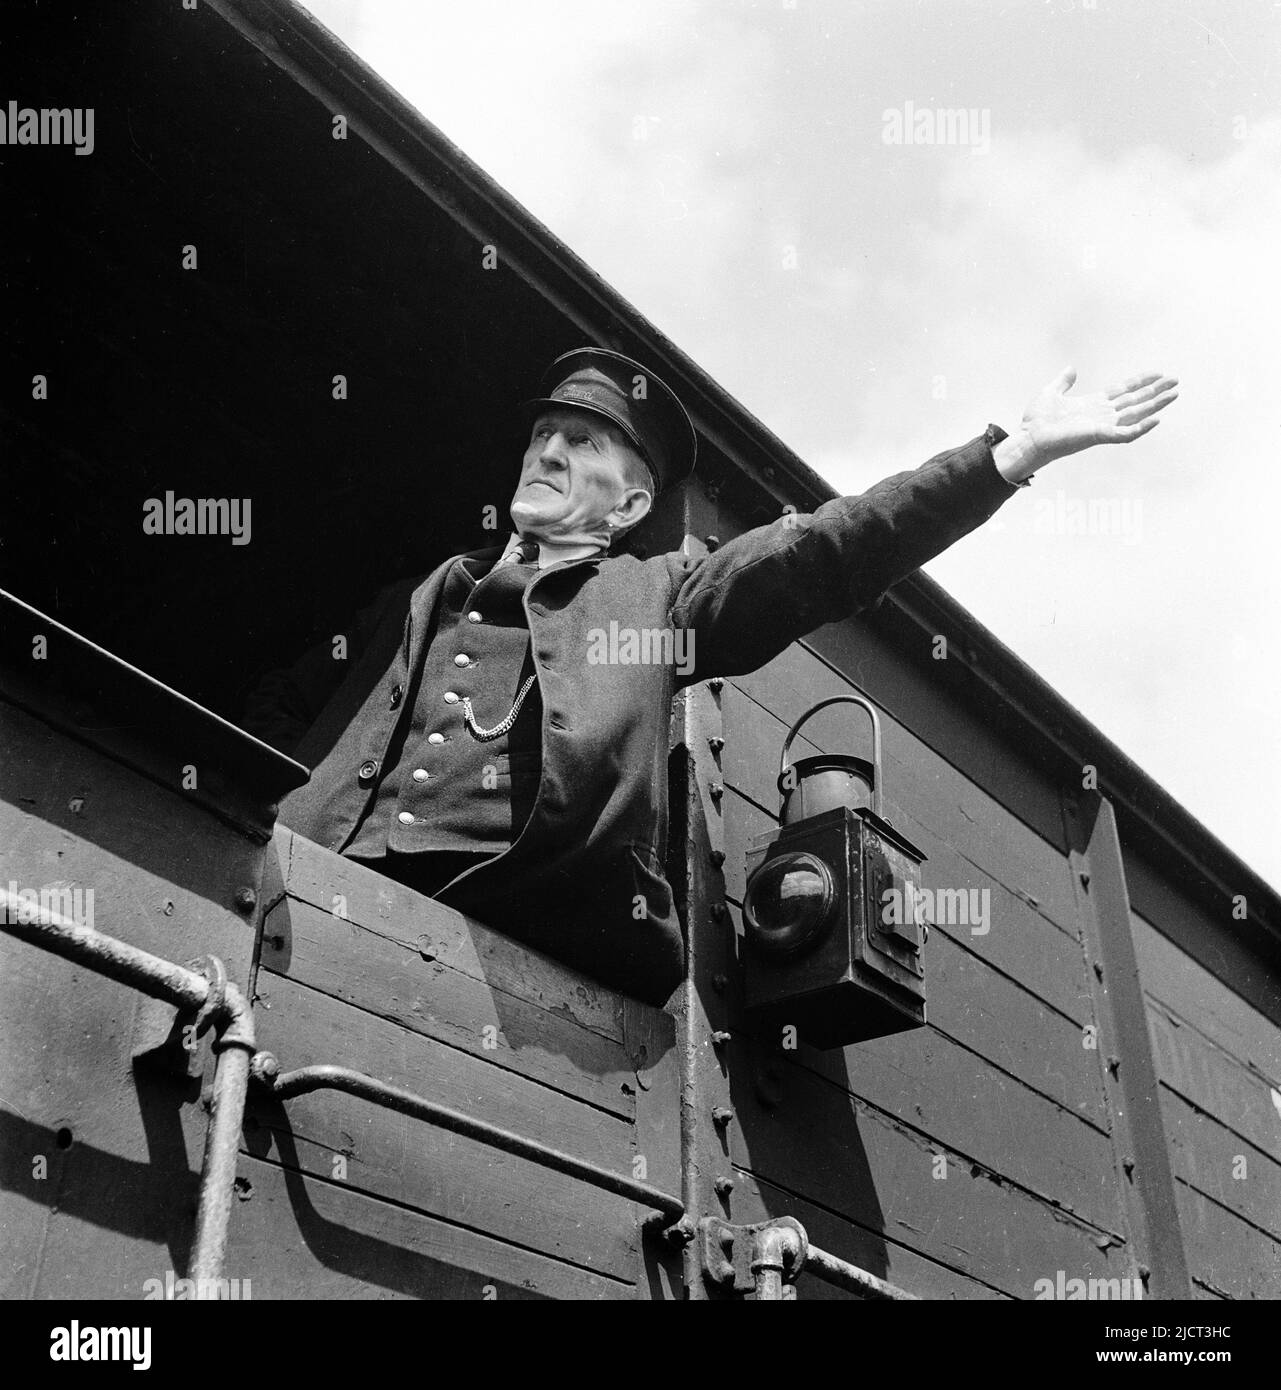 1950s, historisch, ein uniformierte Zugwächter, der in einem hölzernen gerahmten Güterwagen steht und mit einem ausgestrecktem Arm ein Handzeichen gibt, dockt London, England, Großbritannien an. Das Wort Wache ist auf seinen Arbeitshut genäht. An der Außenseite des Wagens hängt eine Bahnleuchte. Stockfoto